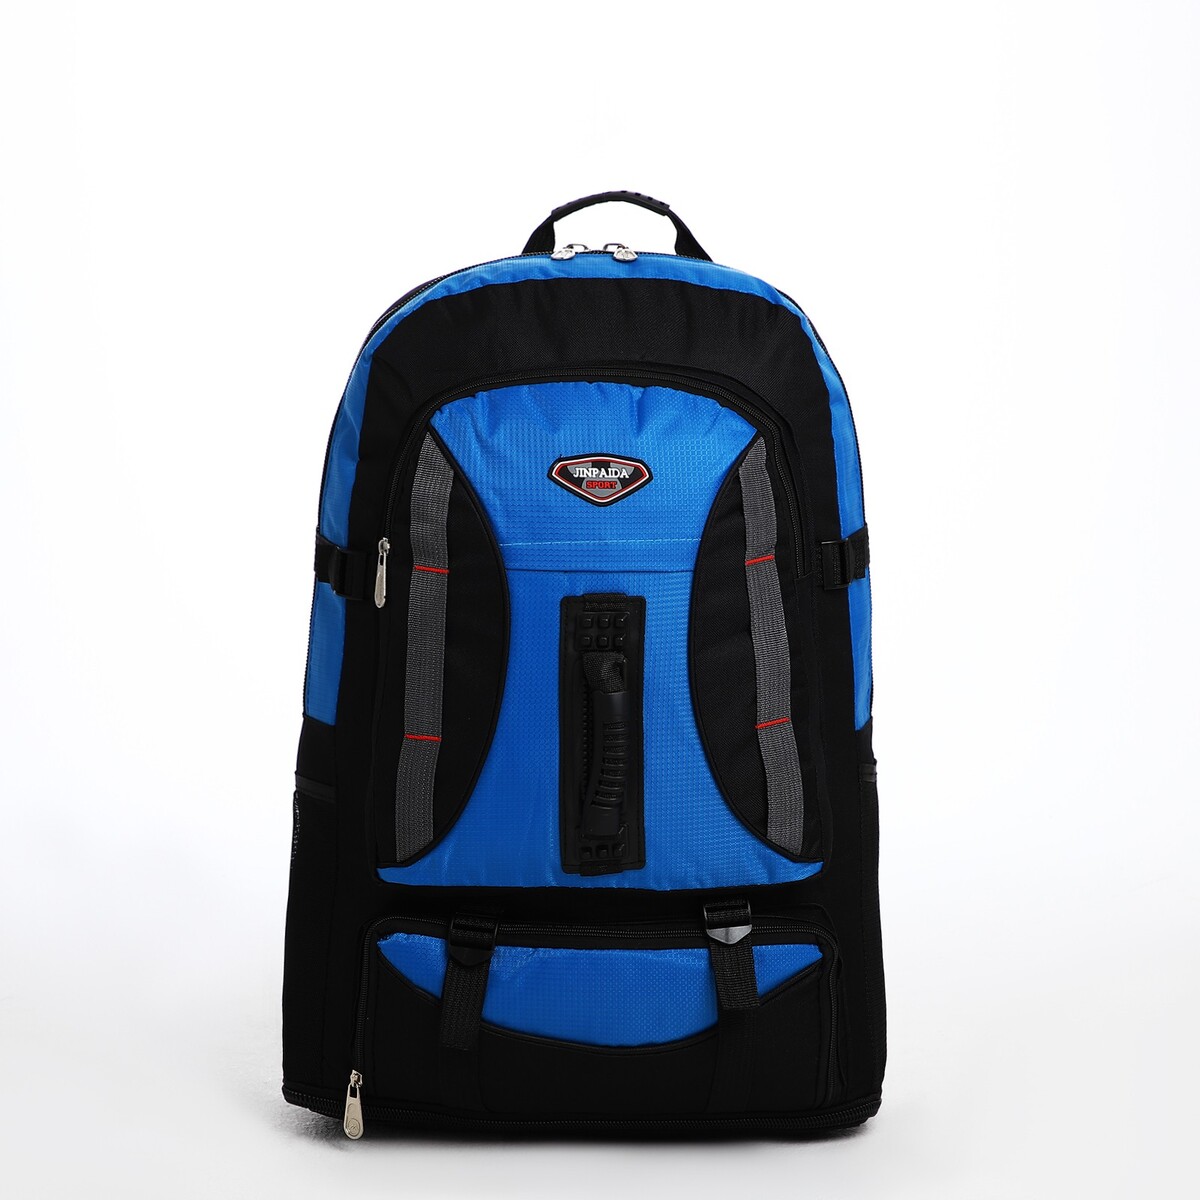 Рюкзак туристический на молнии, 4 наружных кармана, цвет синий/черный рюкзак туристический на молнии 4 наружных кармана синий